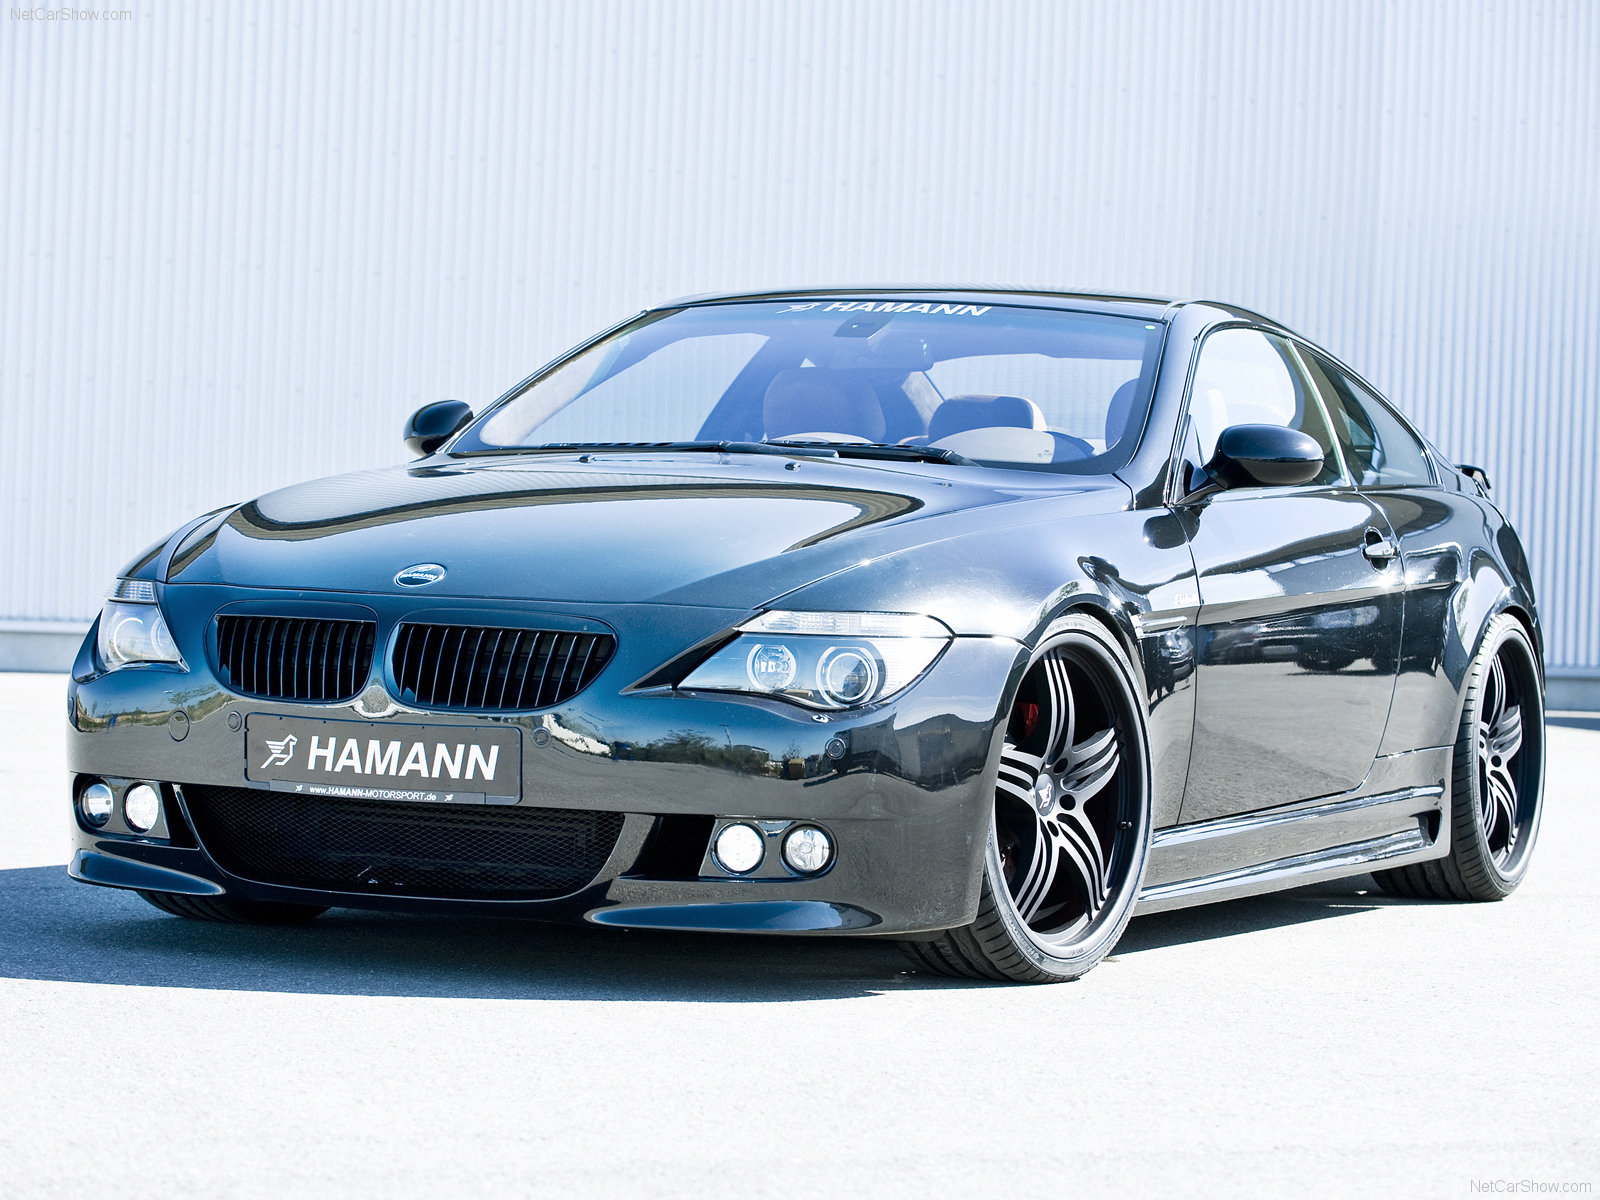 Vous pouvez voter pour cette photo Hamann BMW Série 6